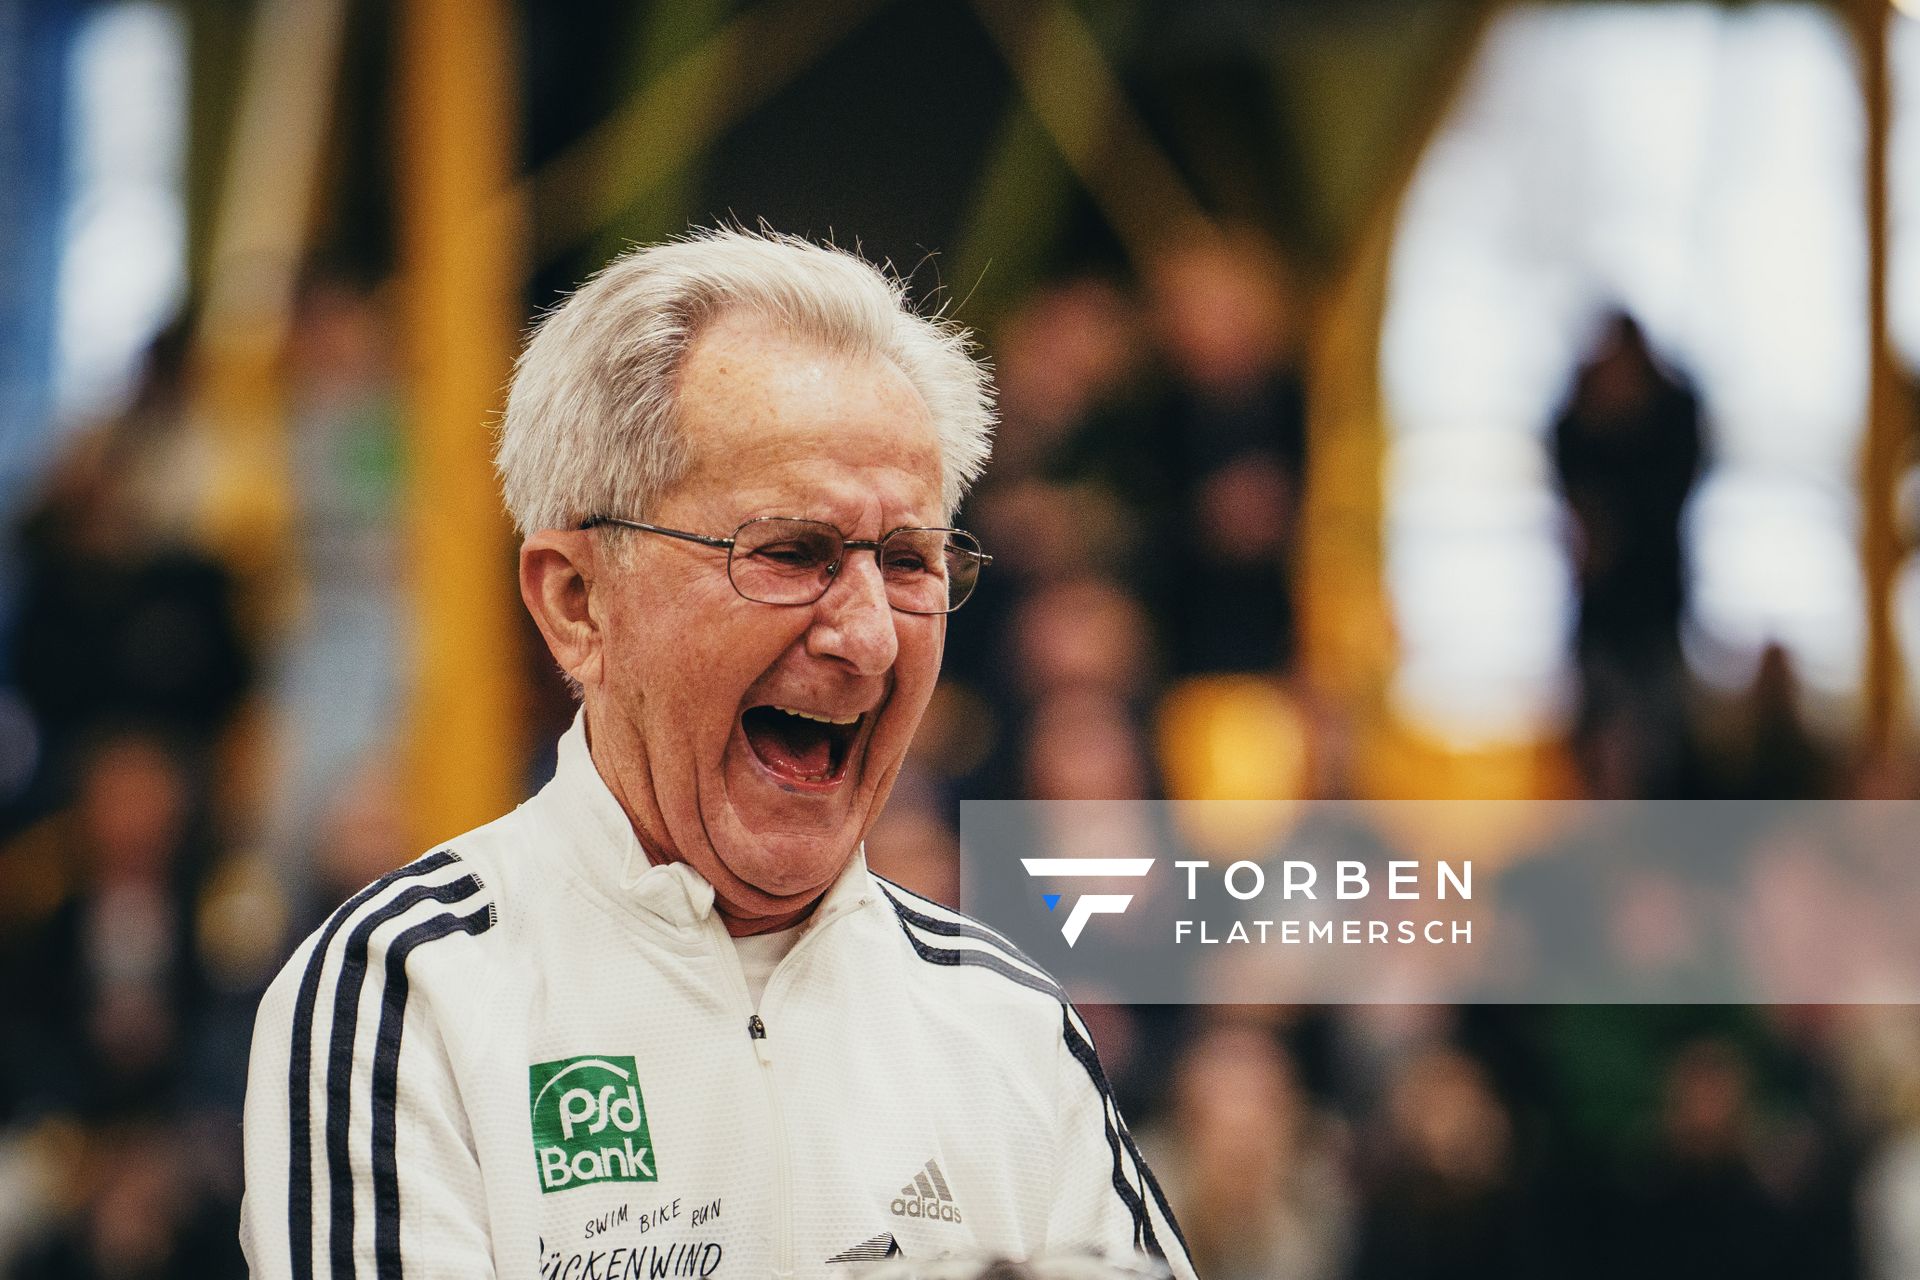 Senioren Leichtathlet des Jahres 2022: Klemens Wittig (LC Rapid Dortmund) bei den Deutschen Leichtathletik-Hallenmeisterschaften am 19.02.2023 in der Helmut-Koernig-Halle in Dortmund